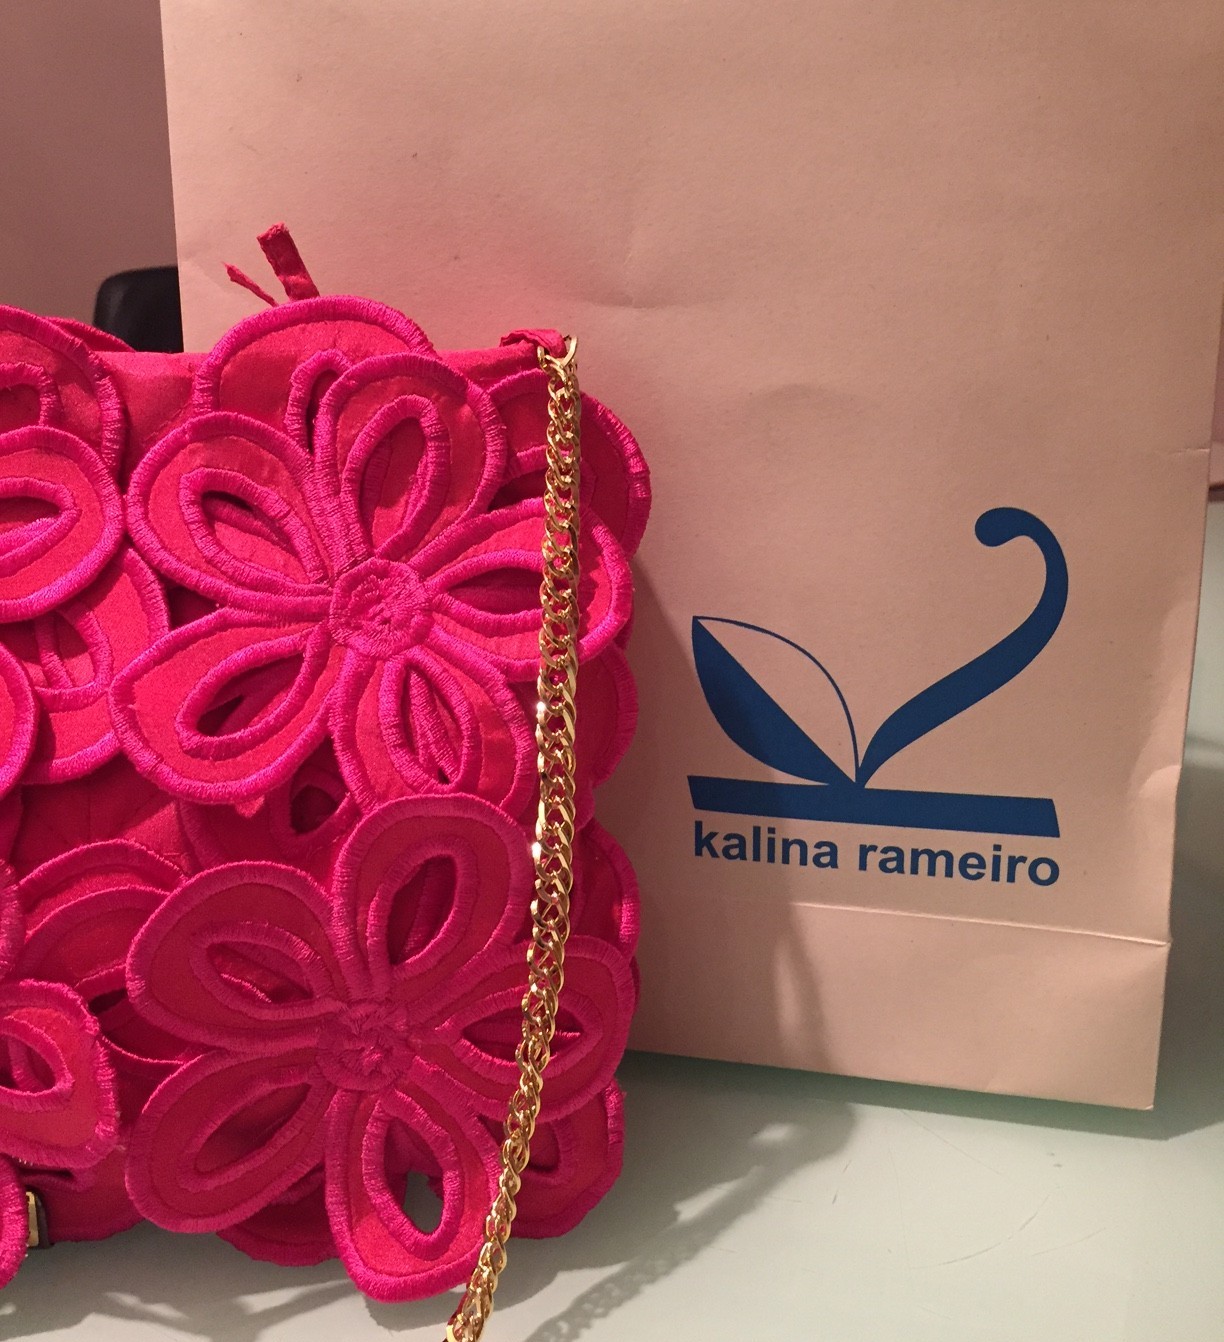 bolsa na cor lilás, em tecido com flores da mesma cor, sobrepostas, a alça é em corrente dourada. logo atrás uma sacola de papel , com os dizeres: Kalina Rameiro.